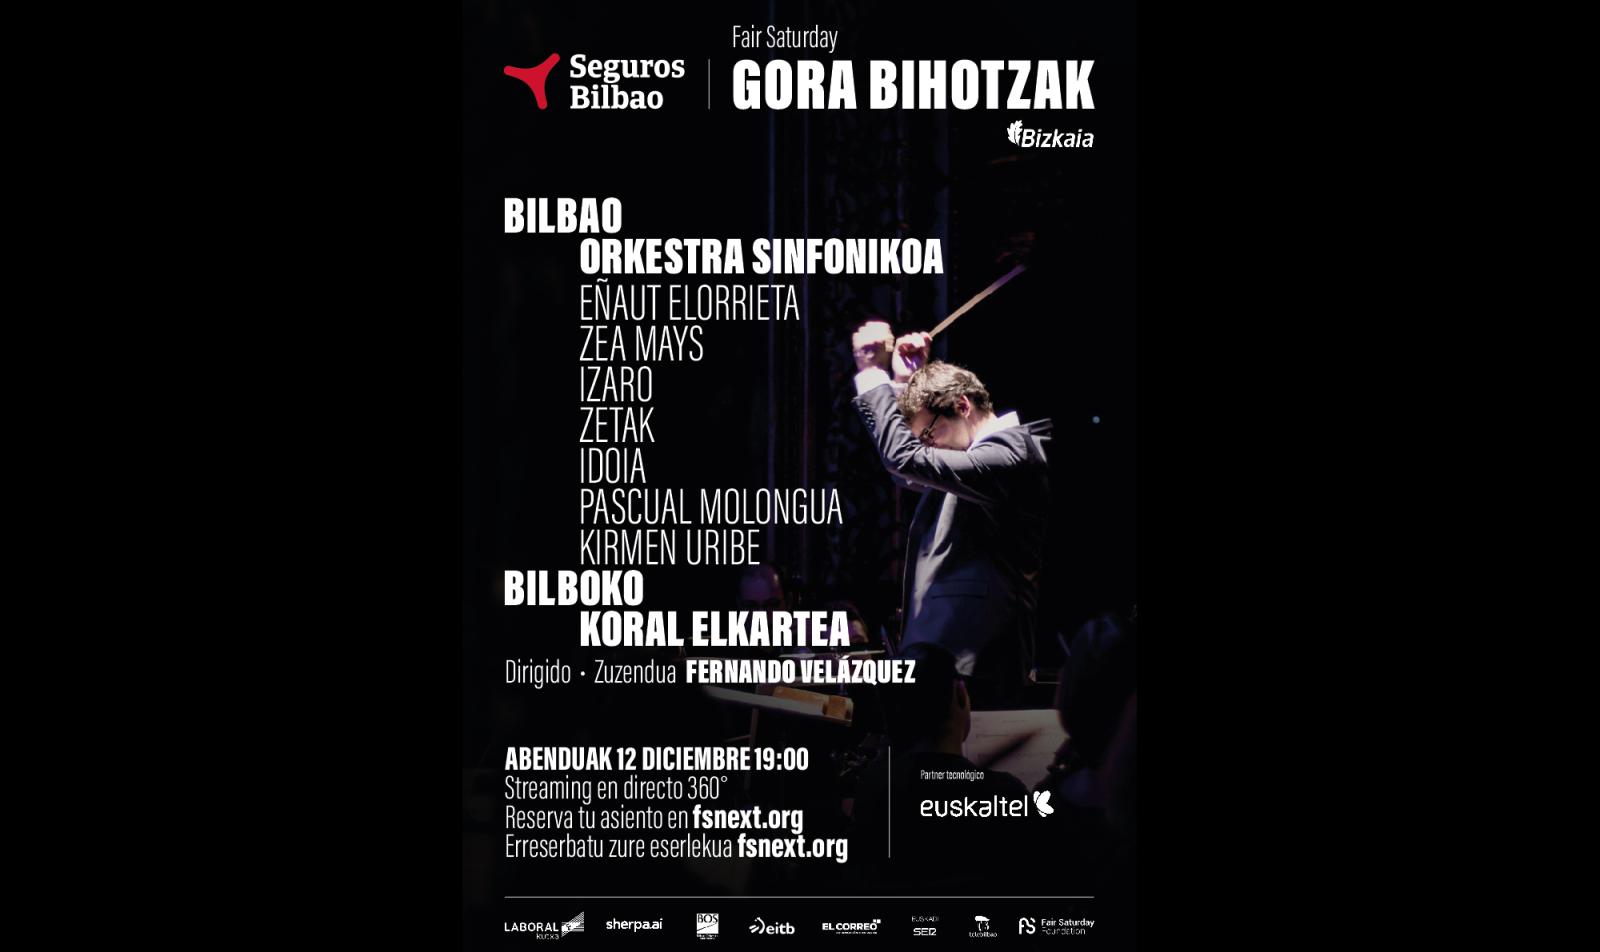 Cartel concierto Gora Bihotzak - Fair Saturday